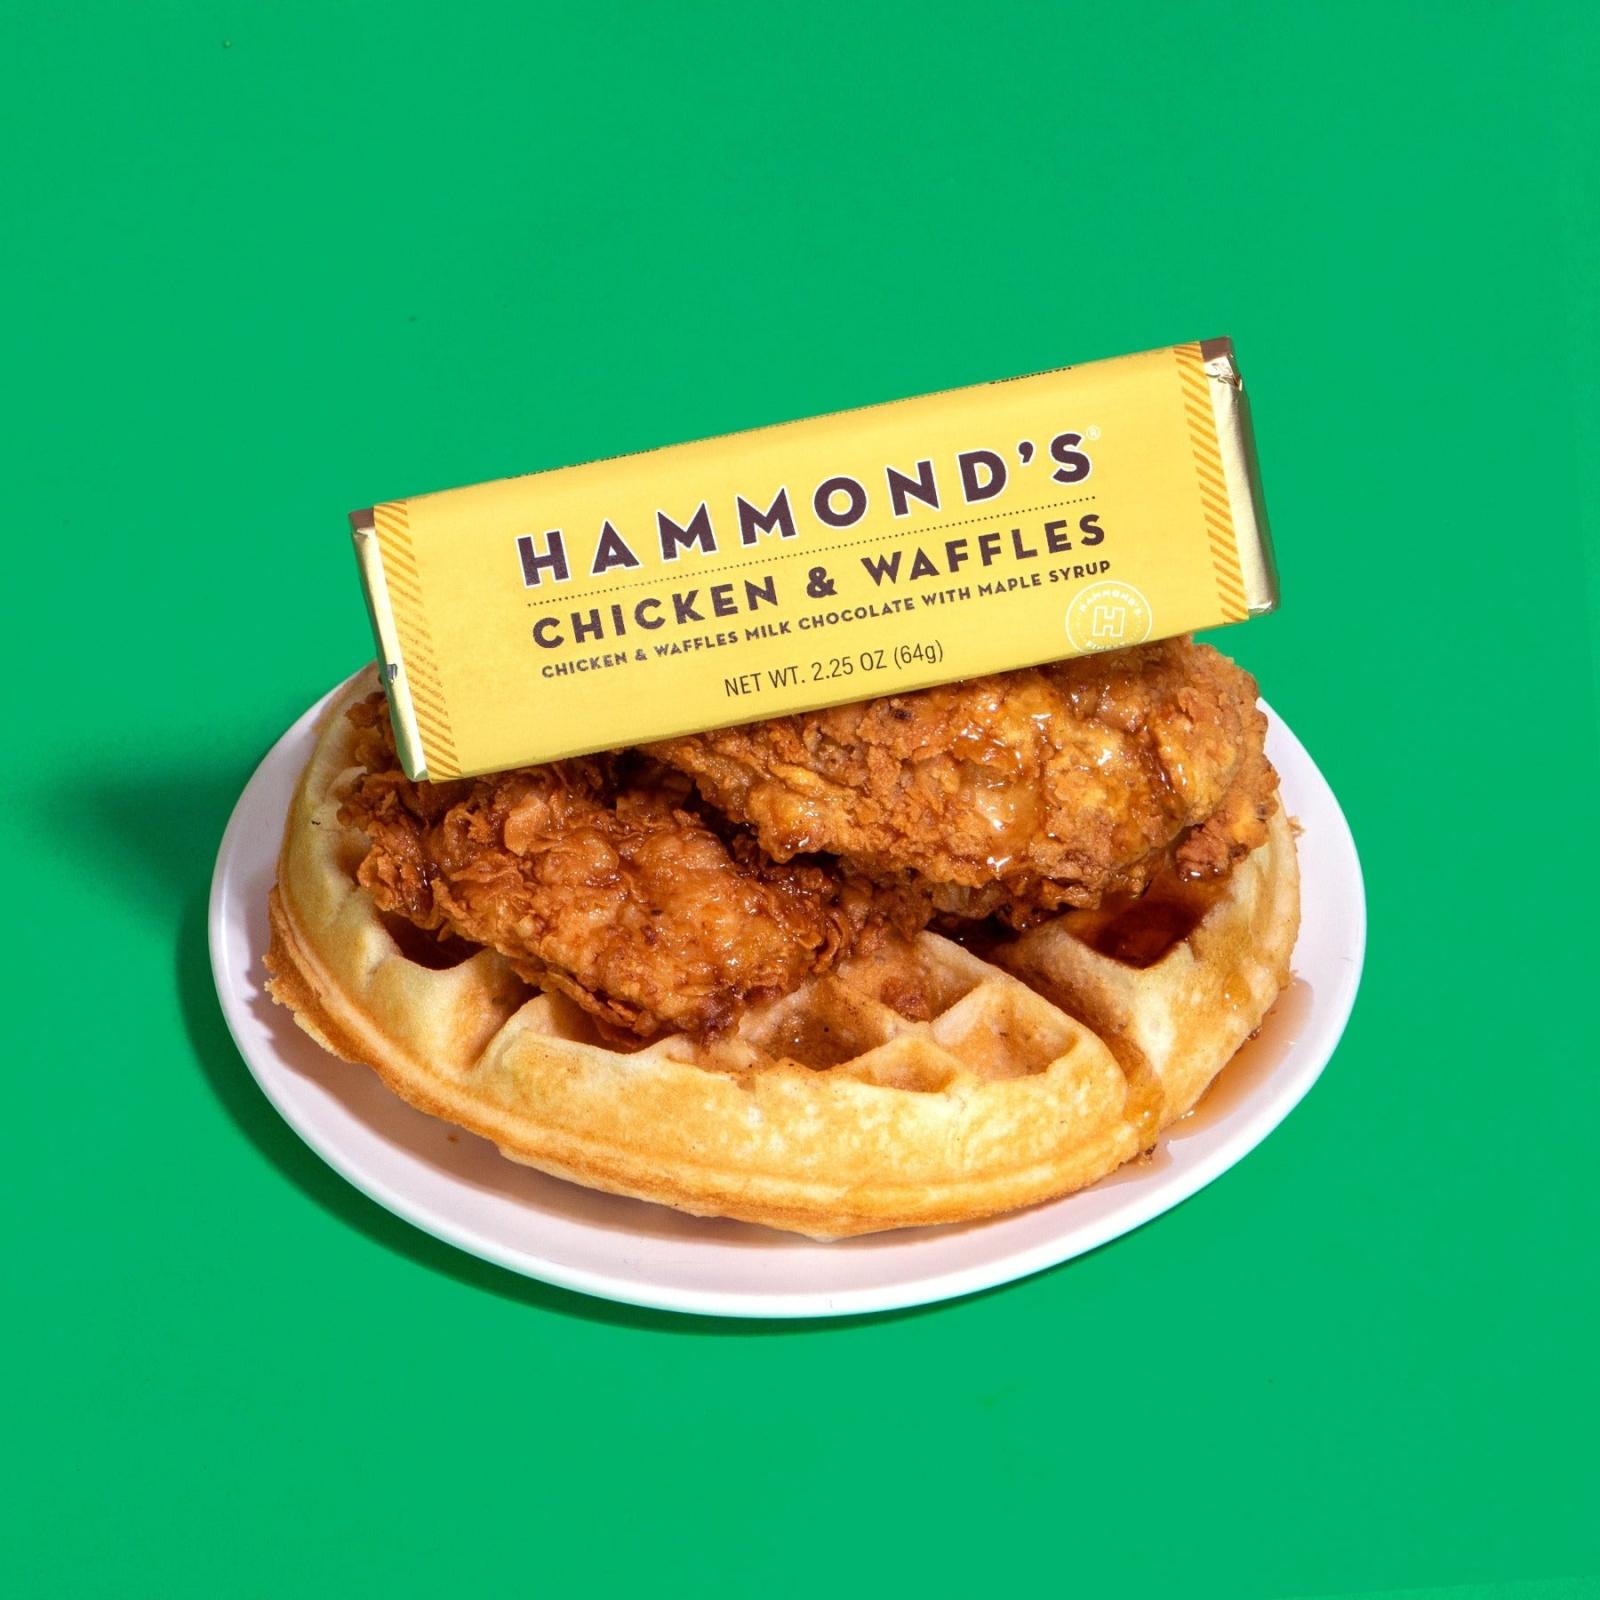  Hammond's Candies Chicken & Waffles Milk Chocolate Bar